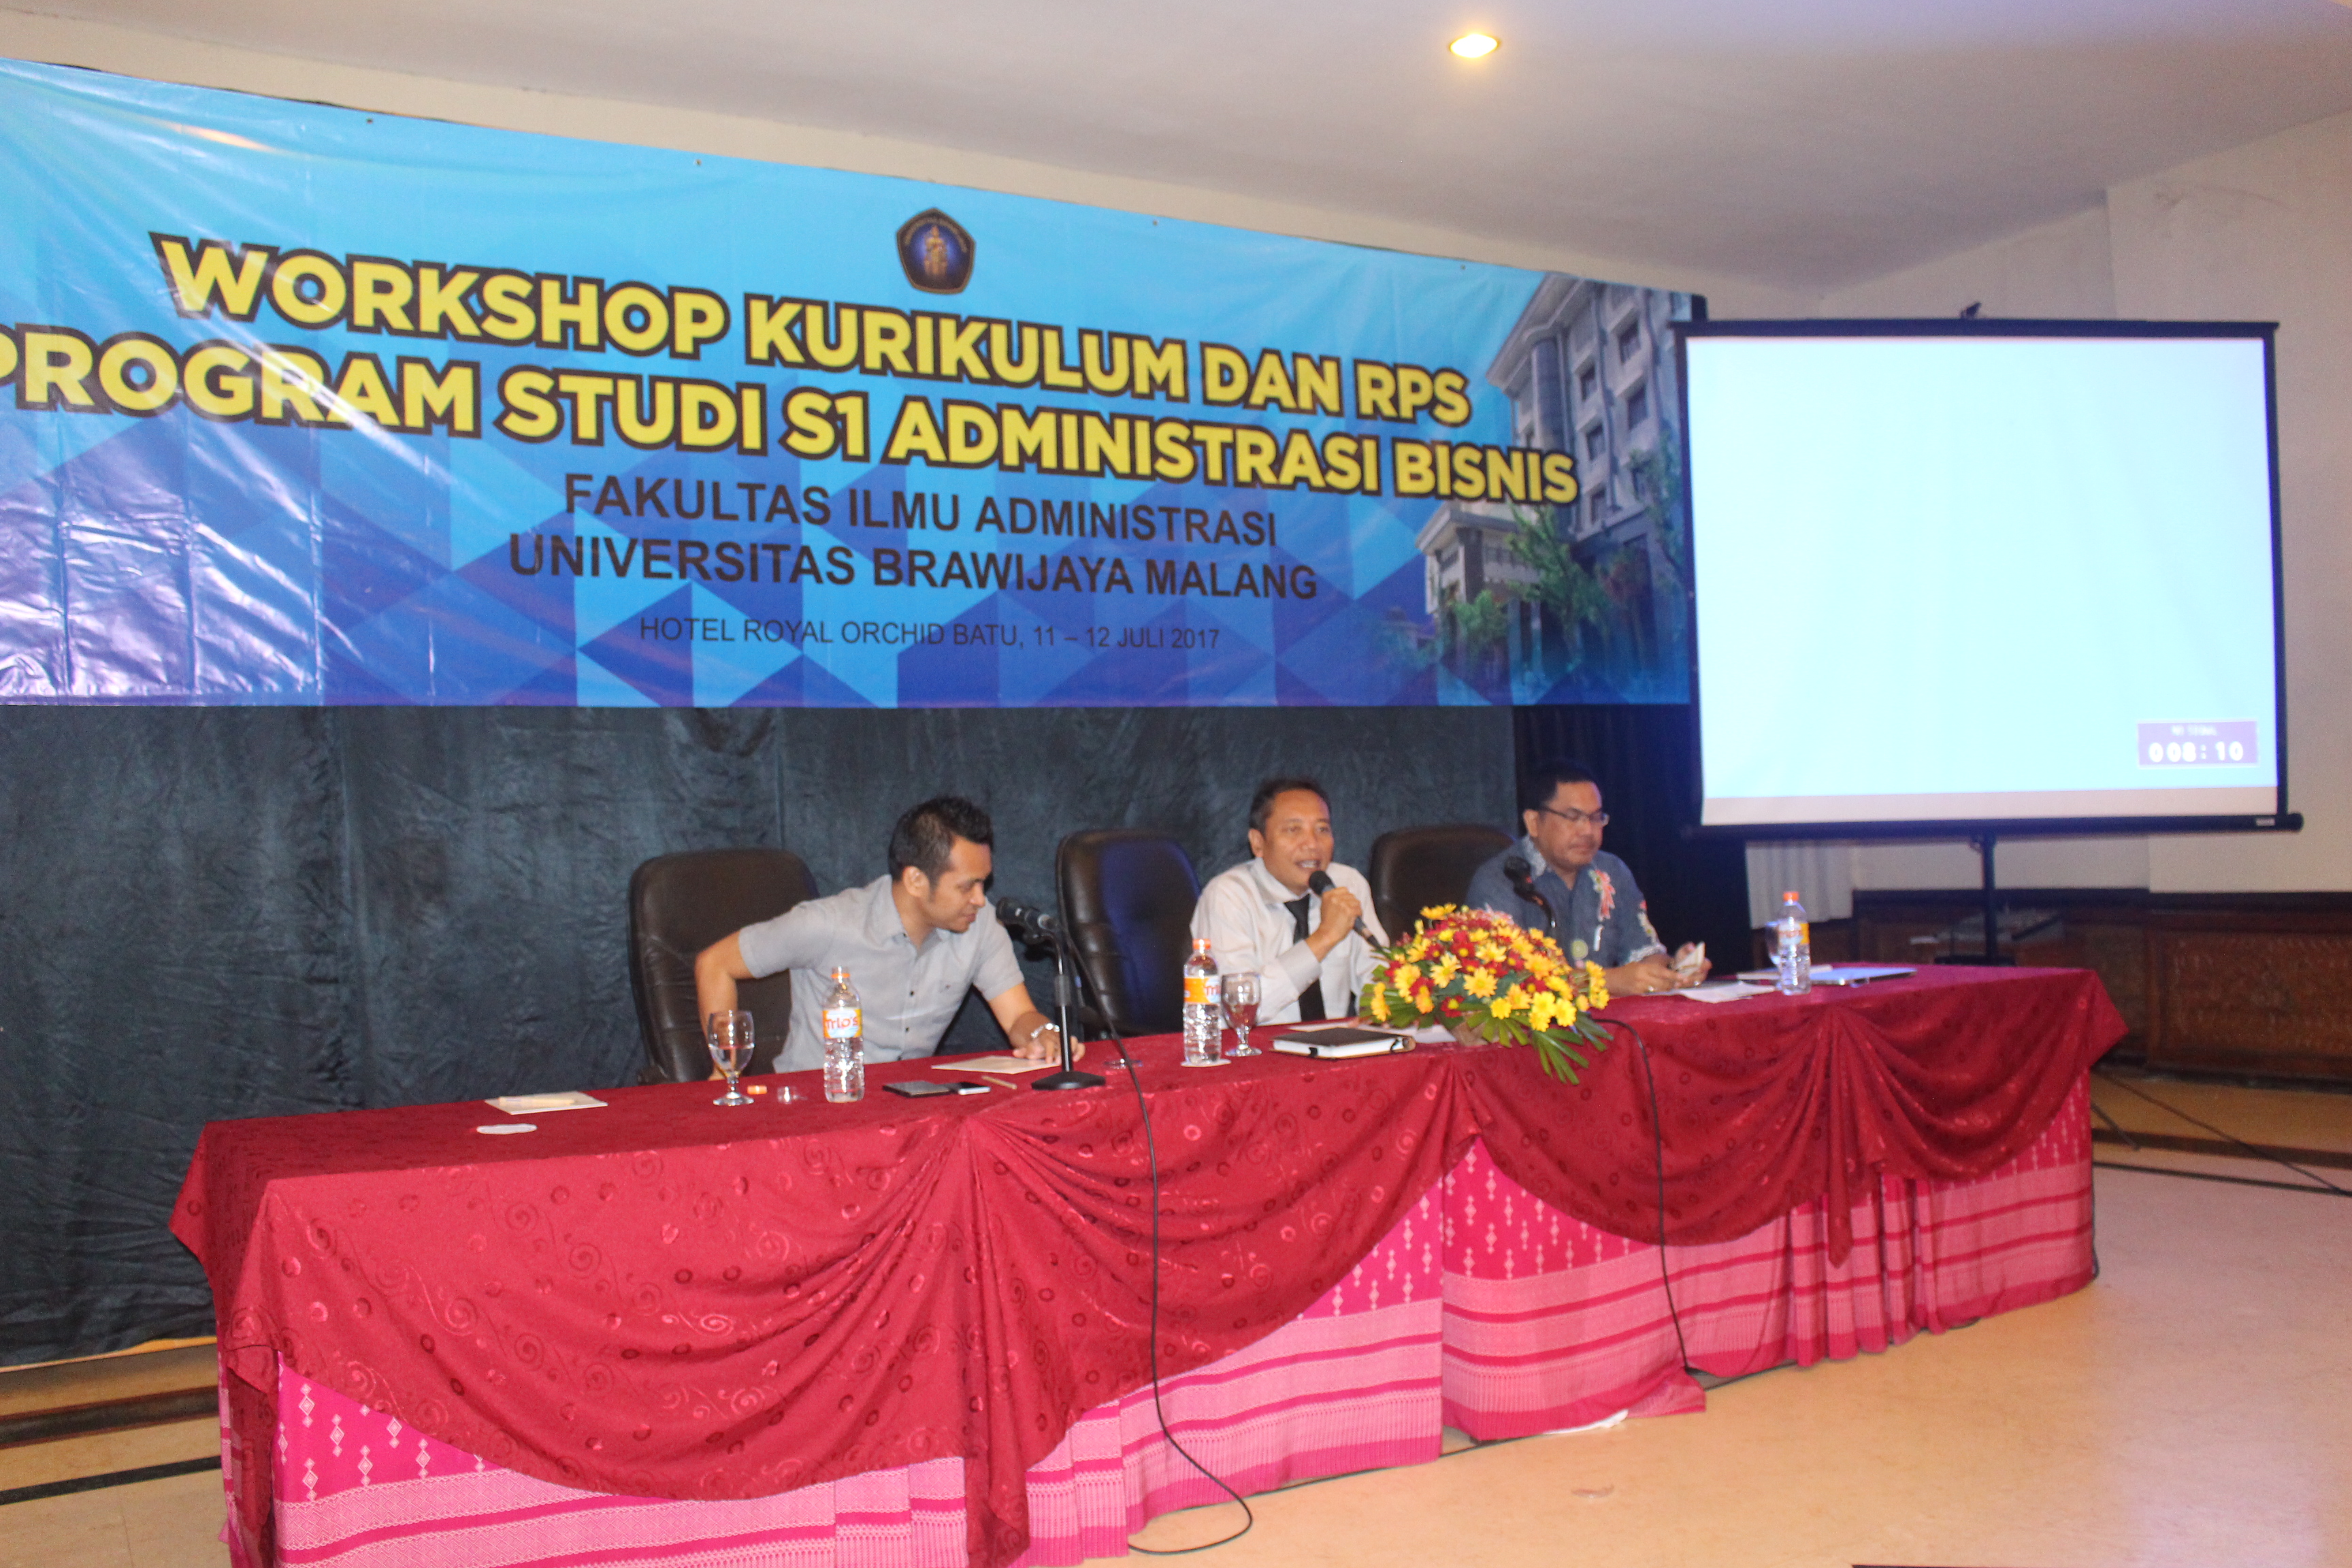 Workshop Kurikulum Dan RPS Program Studi S1 Administrasi Bisnis